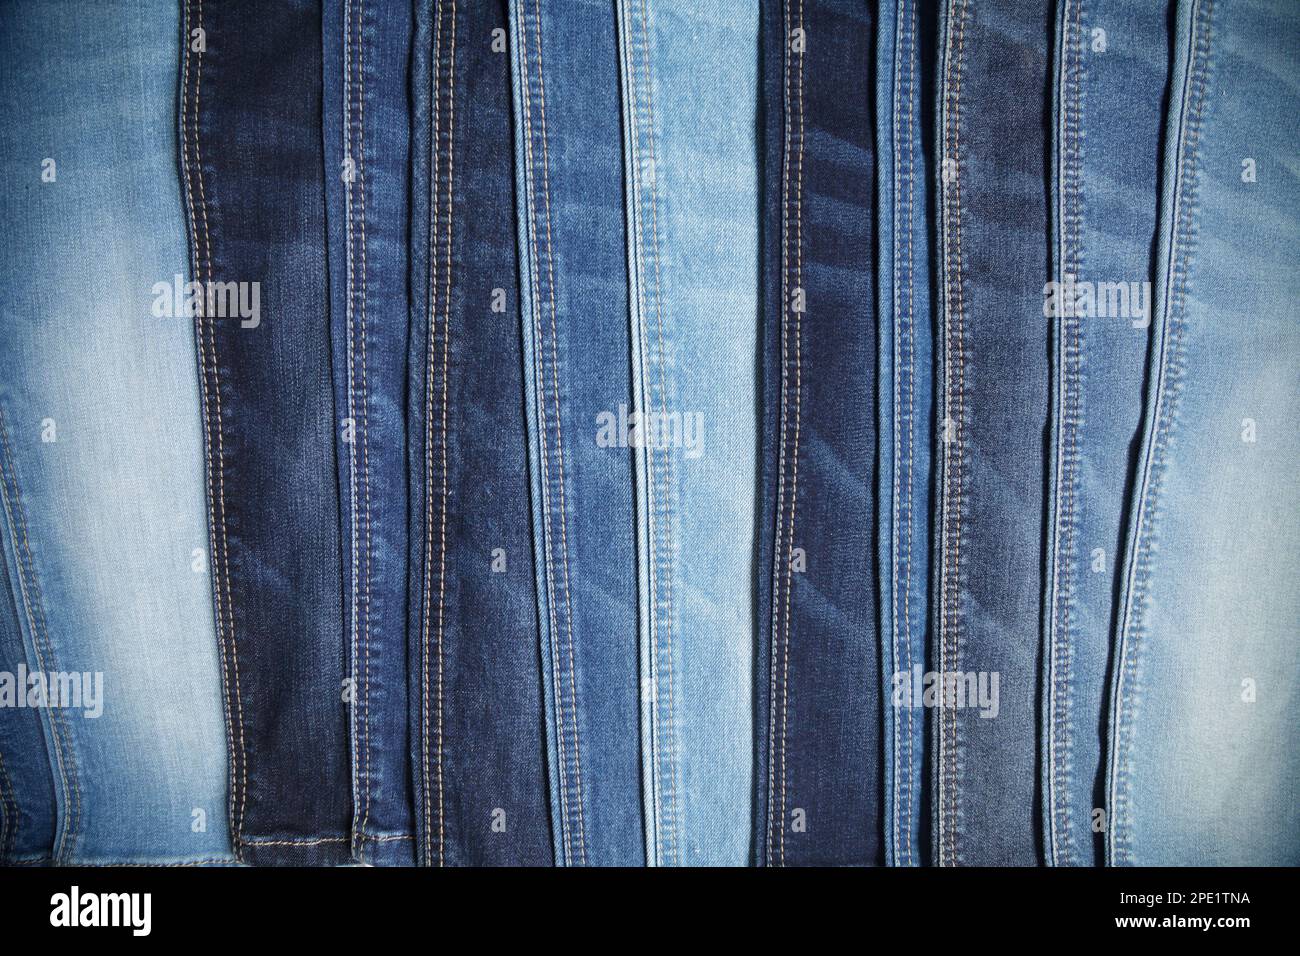 Viele blaue Jeans in einer Reihe Hintergrund angeordnet. Auswahl an lässigen Hosen in einem Bekleidungsgeschäft Stockfoto